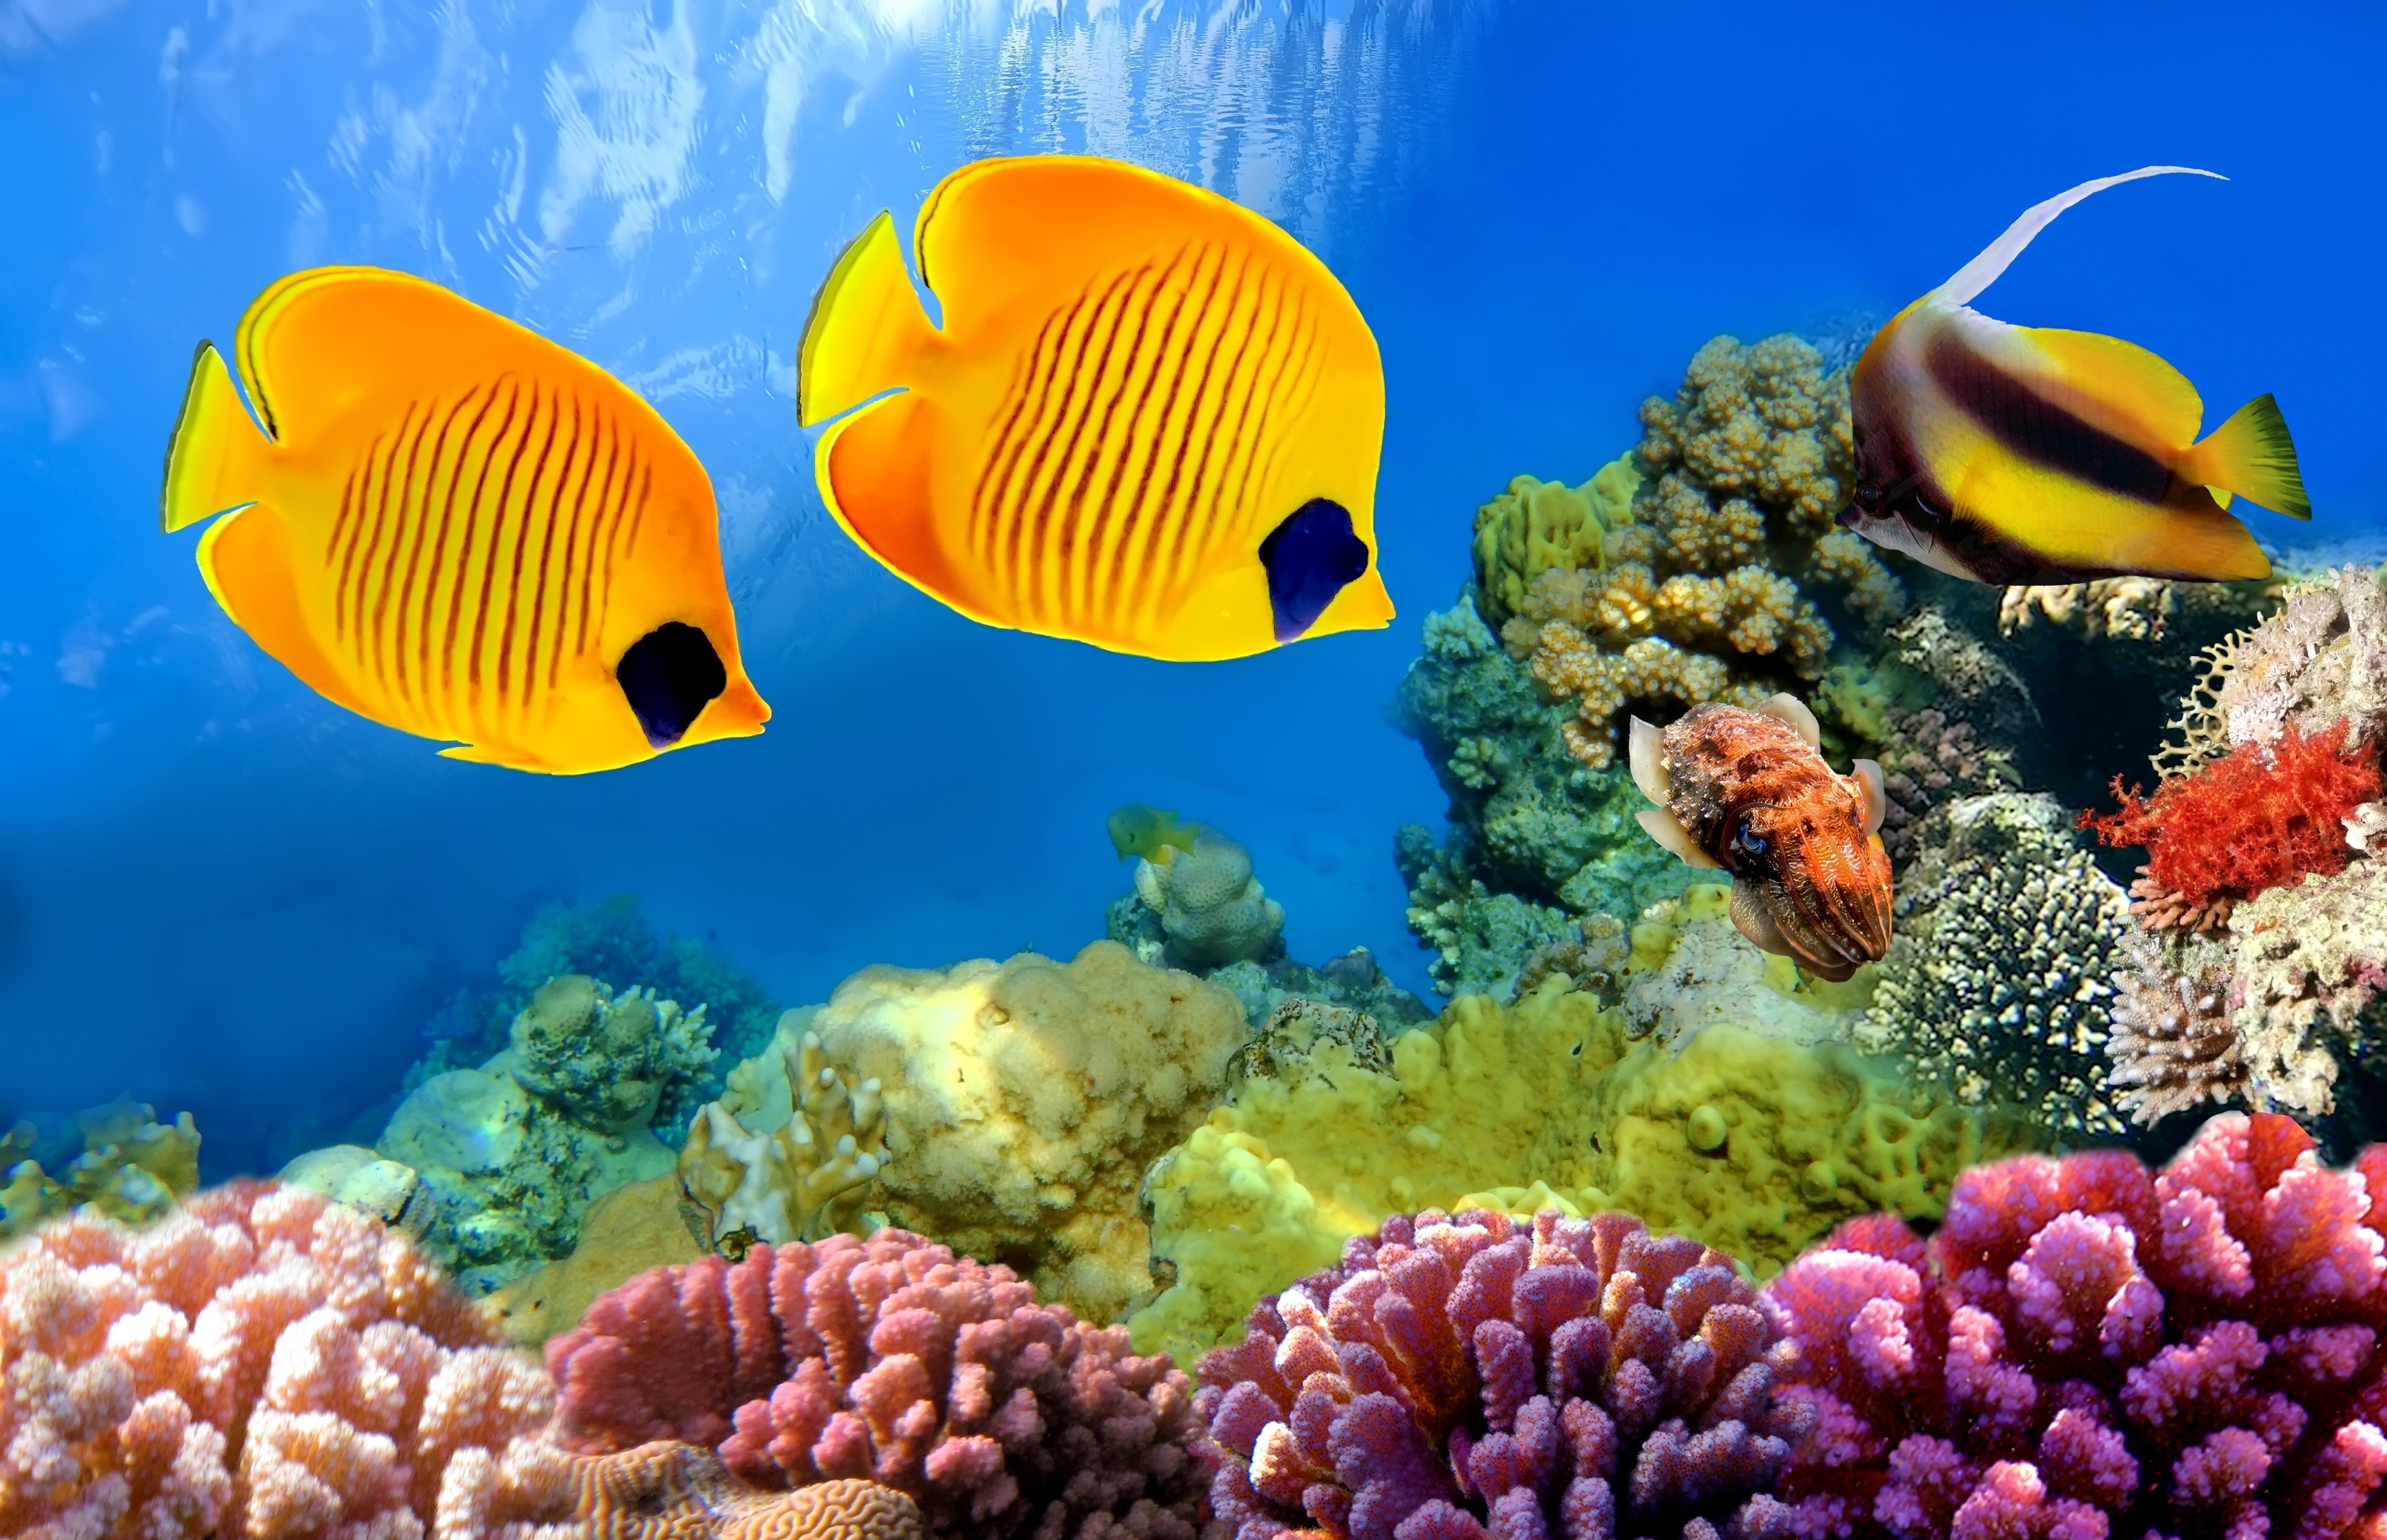 Популярные заставки и фоны Коралловый Риф на компьютер